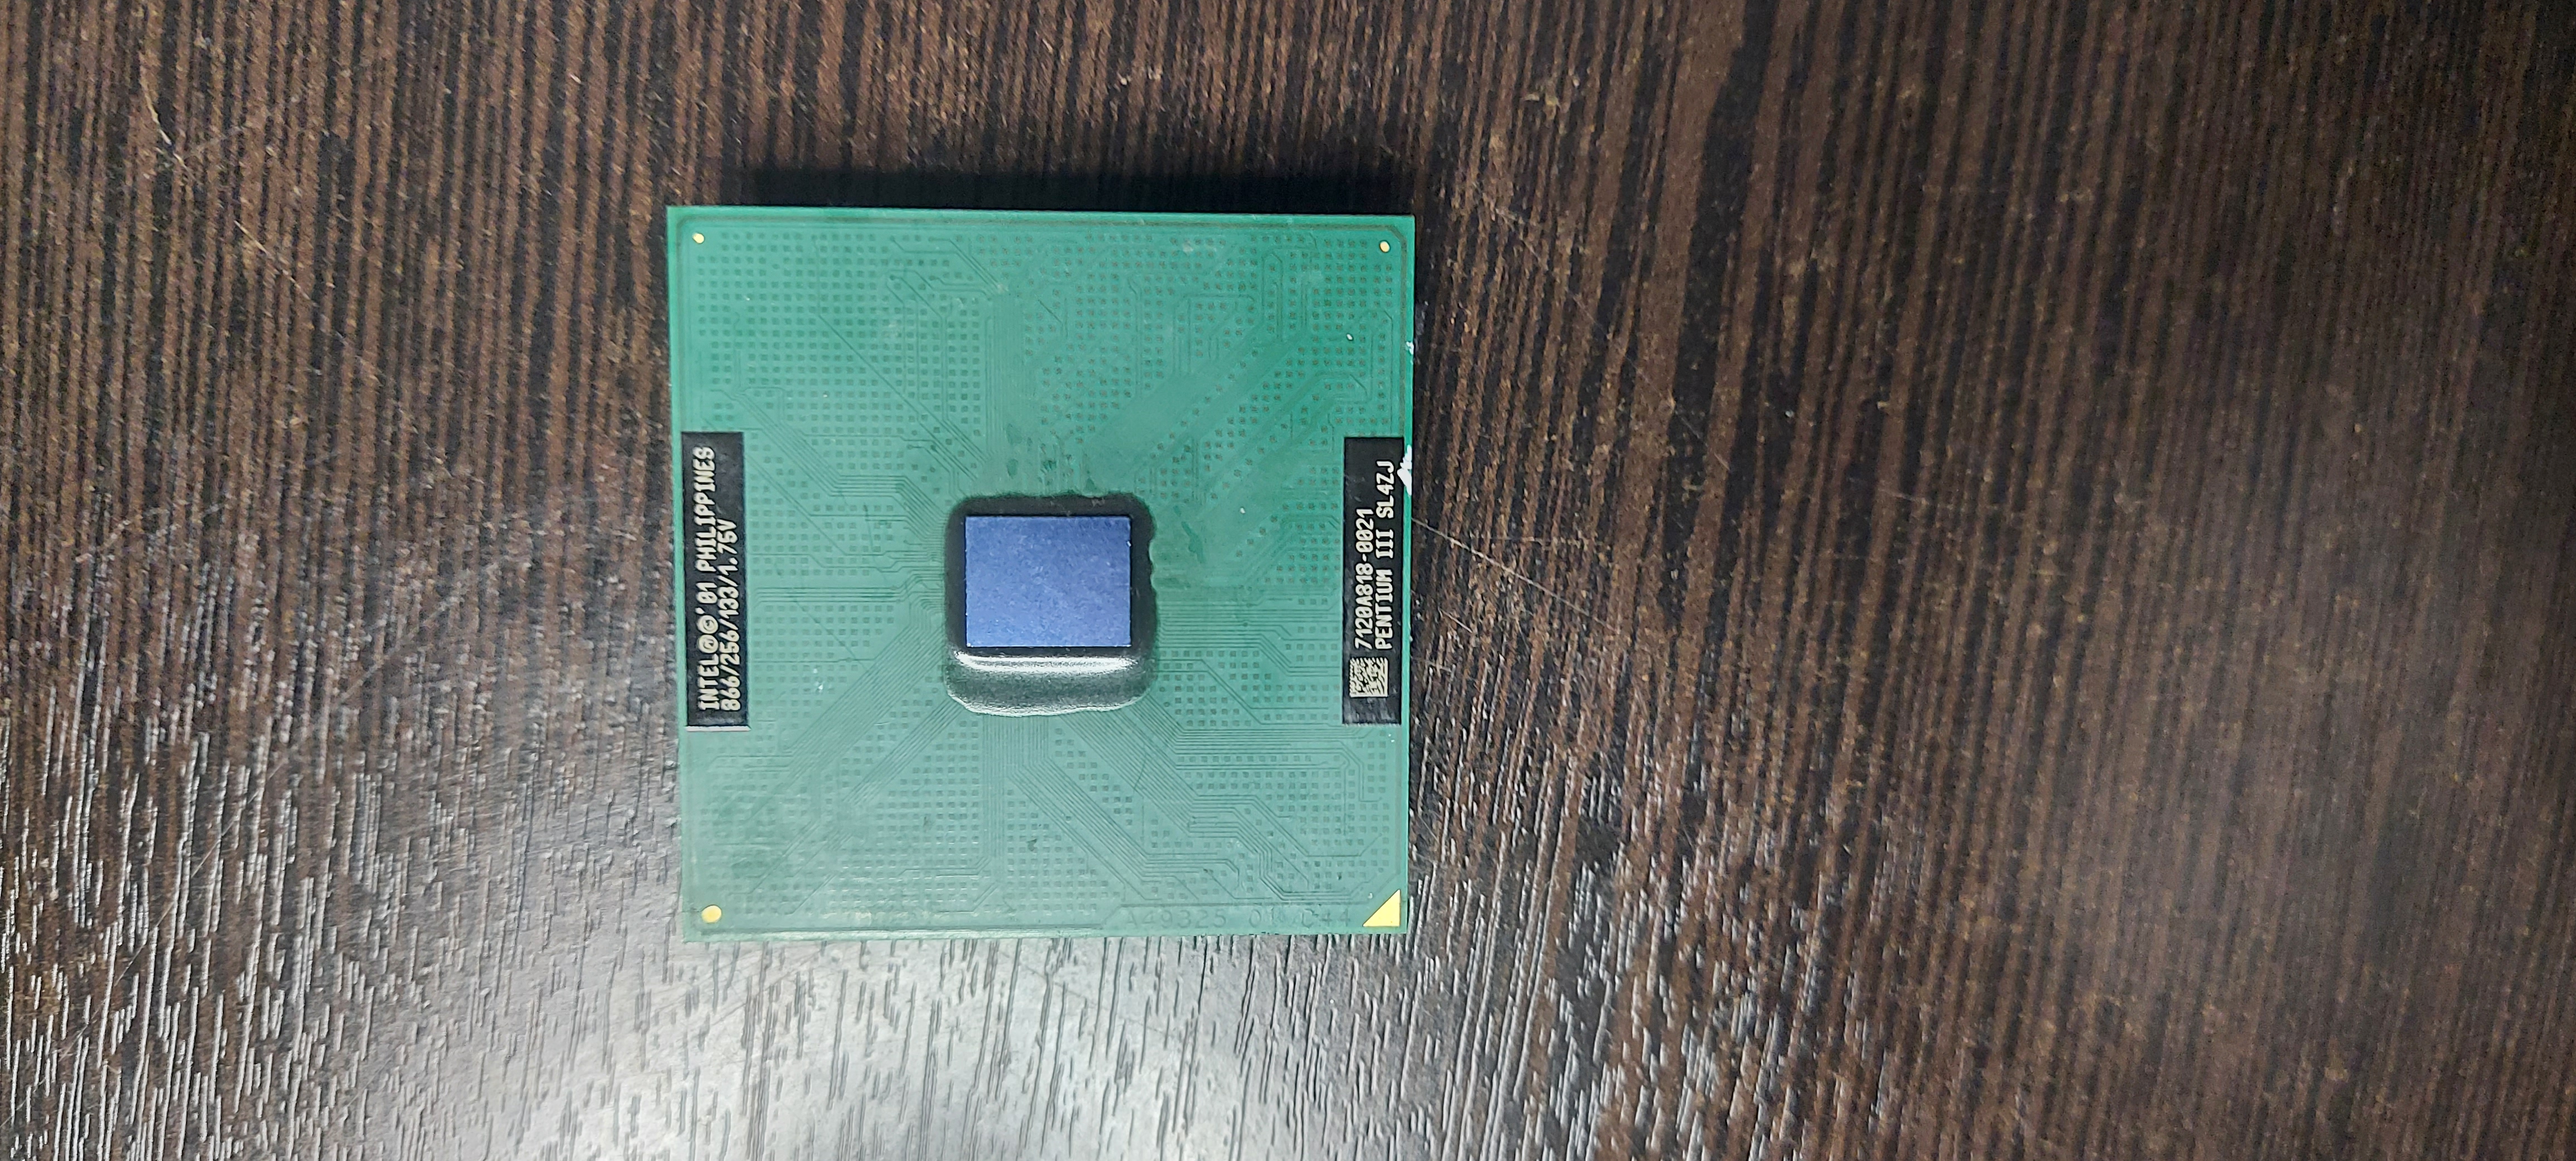 Процессор S370 Intel